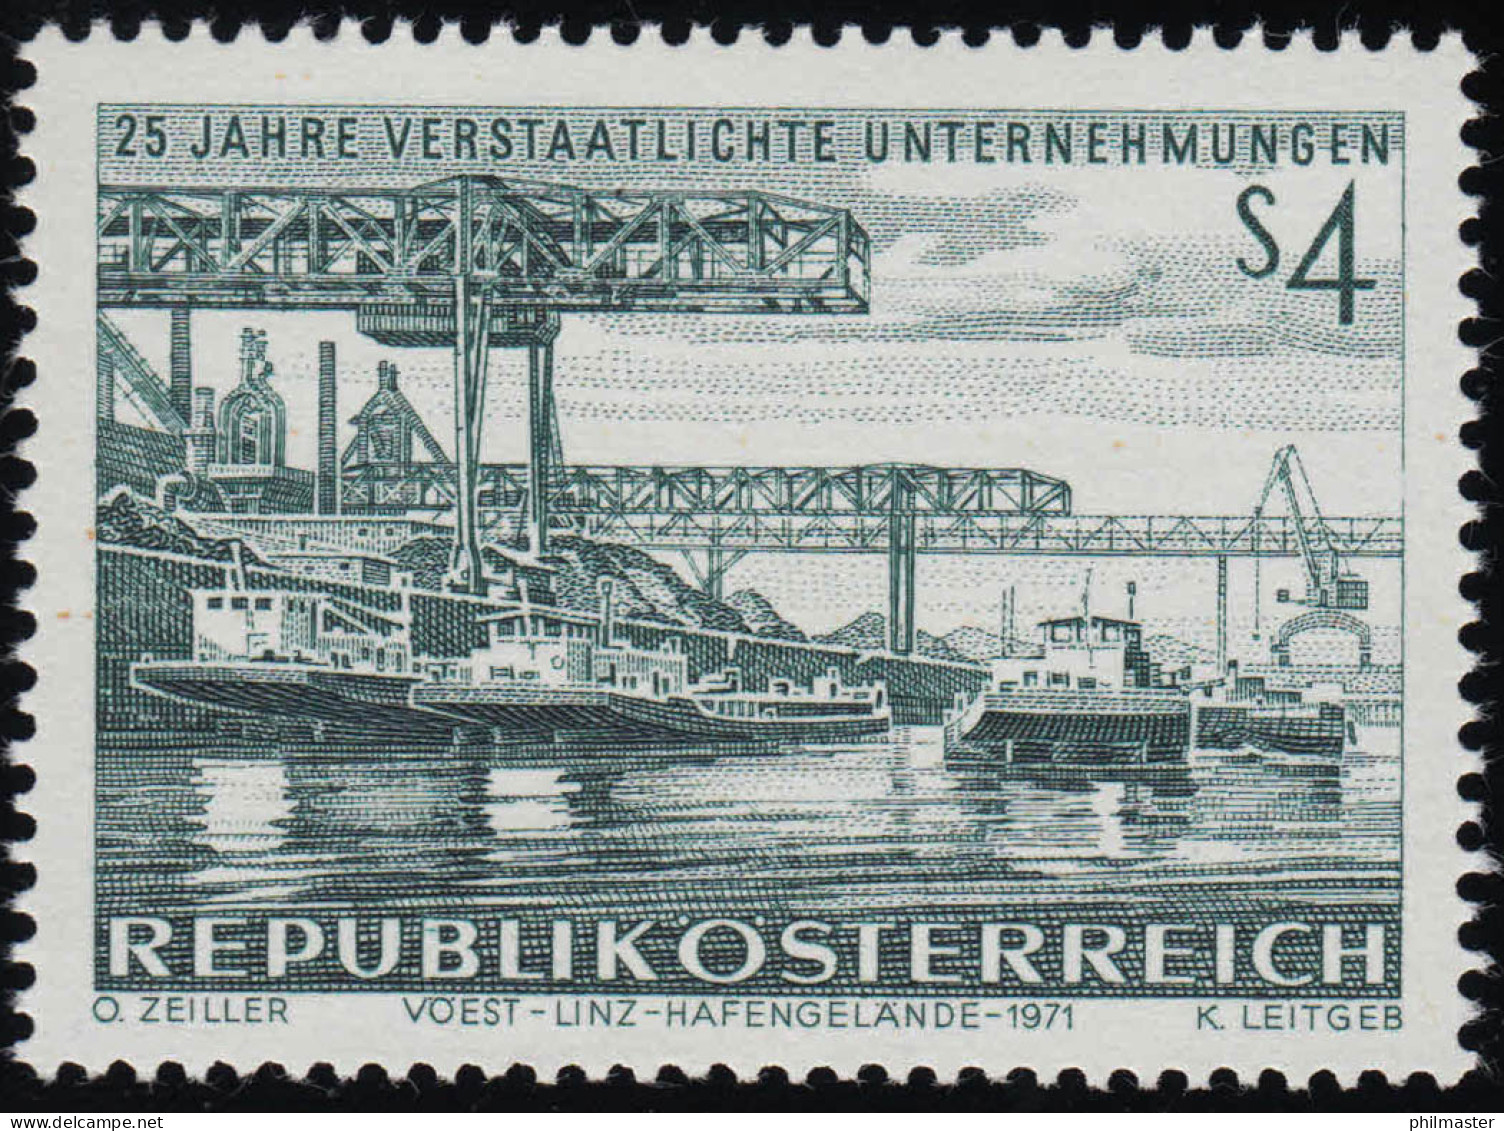 1375 25 J. Verstaatl. Unternehmen, Eisen & Stahlwerk Linz Hafengelände, 4 S, ** - Nuovi